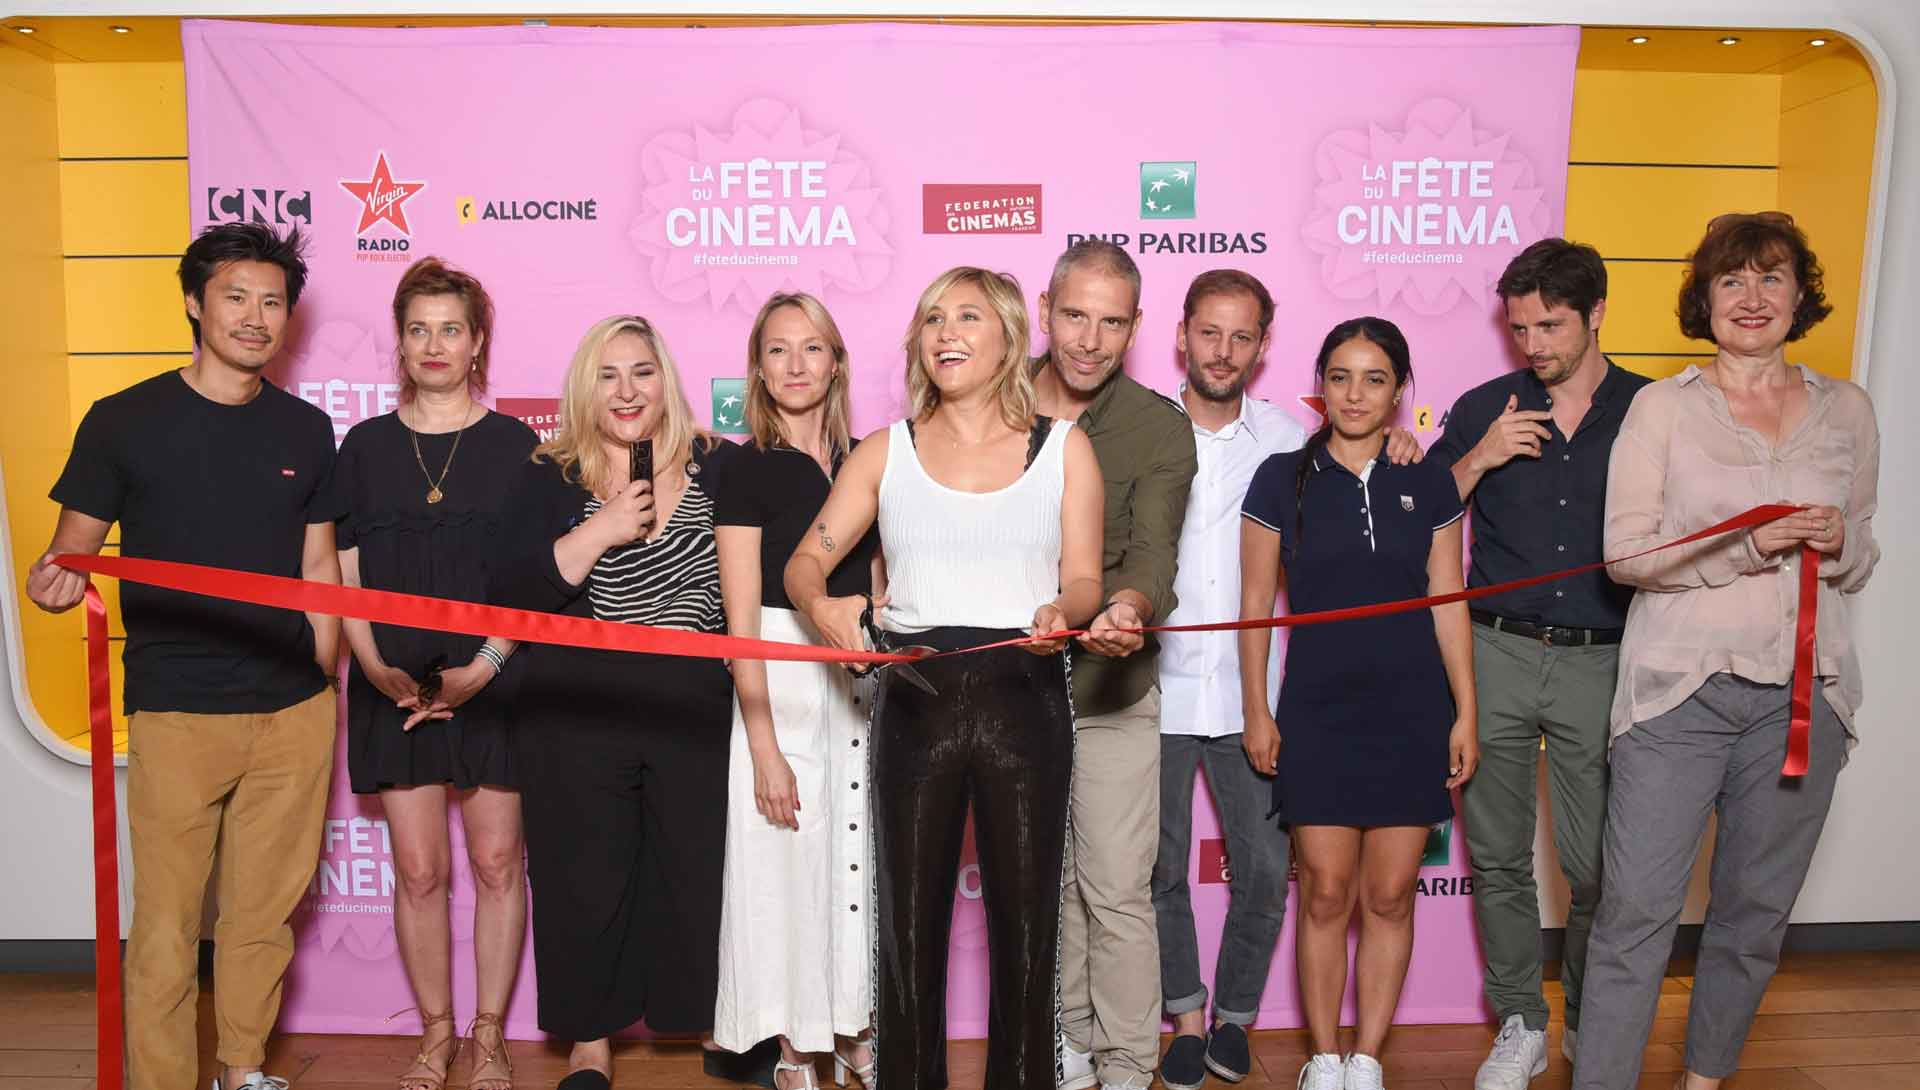 Les ambassadeurs de la Fête du cinéma lors de l’ouverture officielle le dimanche 30 juin au Pathé Beaugrenelle 